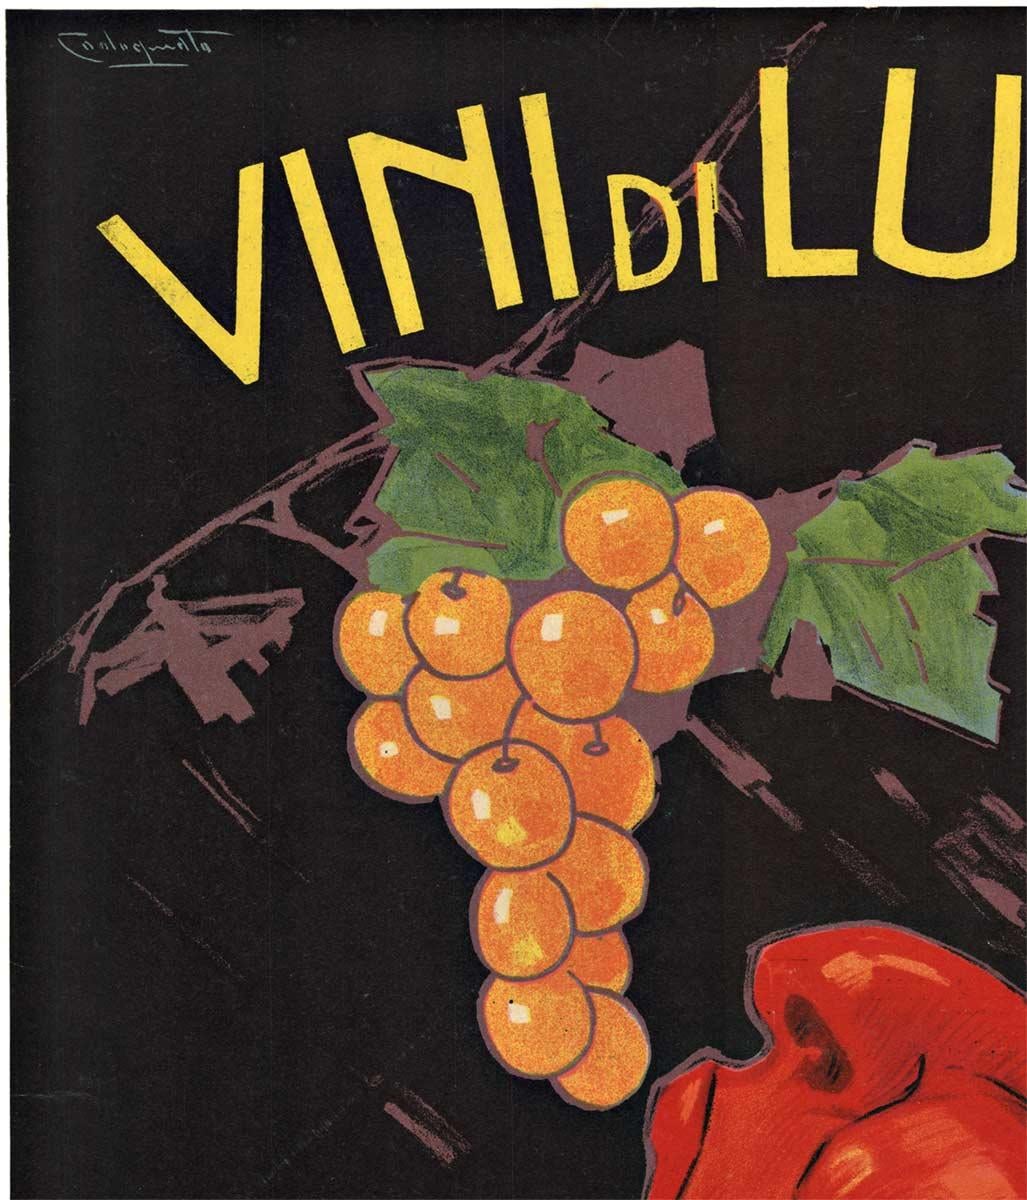 Original Vini di Lusso Italian wine vintage poster  1922 - Art Deco Print by Plinio Codognato